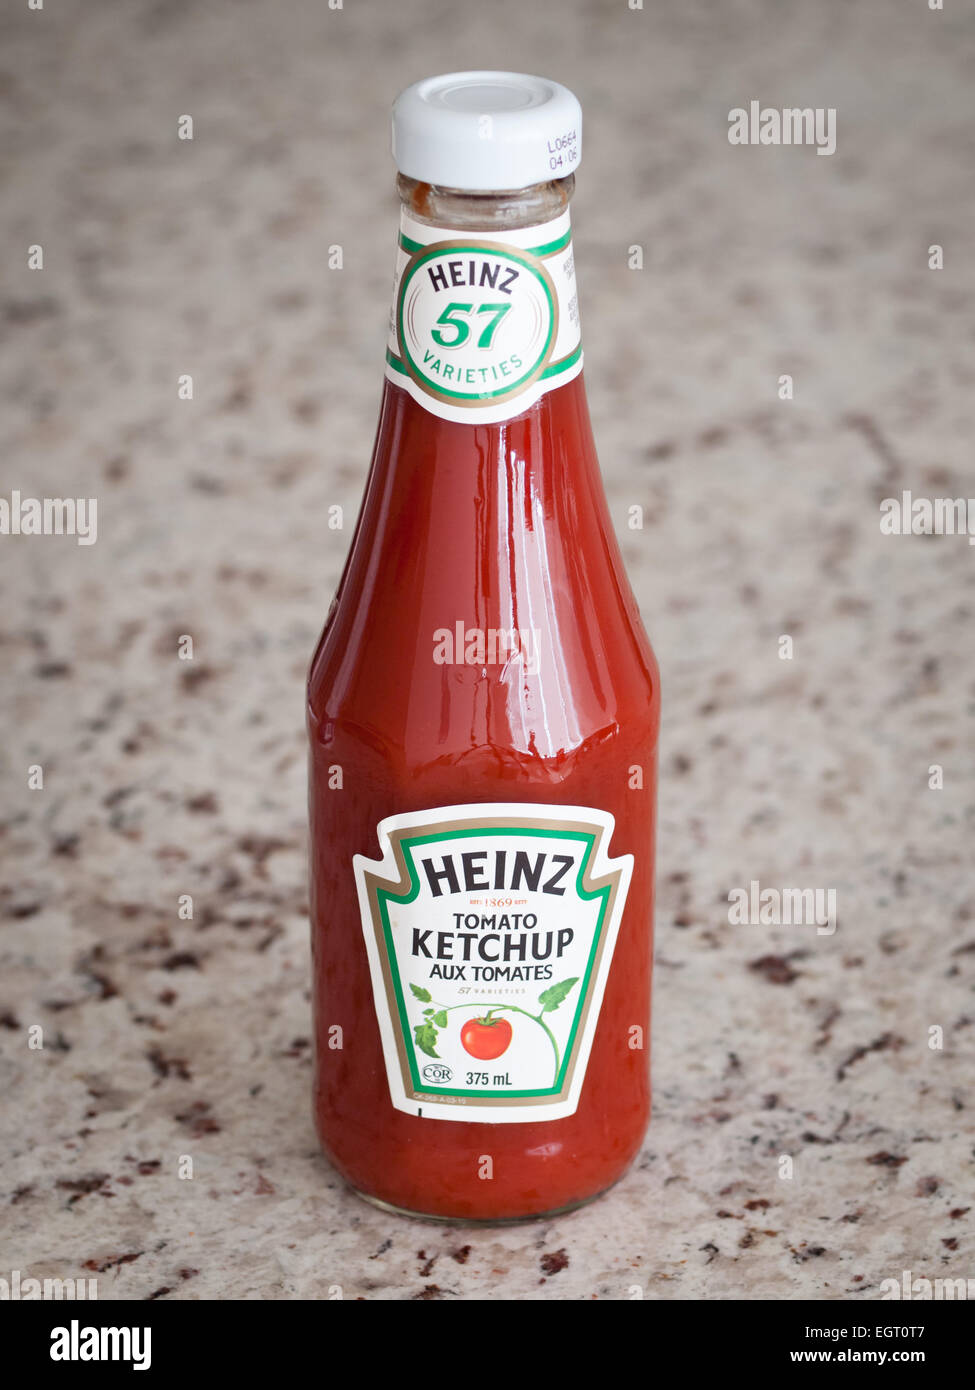 Un clásico, la salsa de tomate ketchup Heinz botella de vidrio. Embalaje canadiense se muestra. Foto de stock